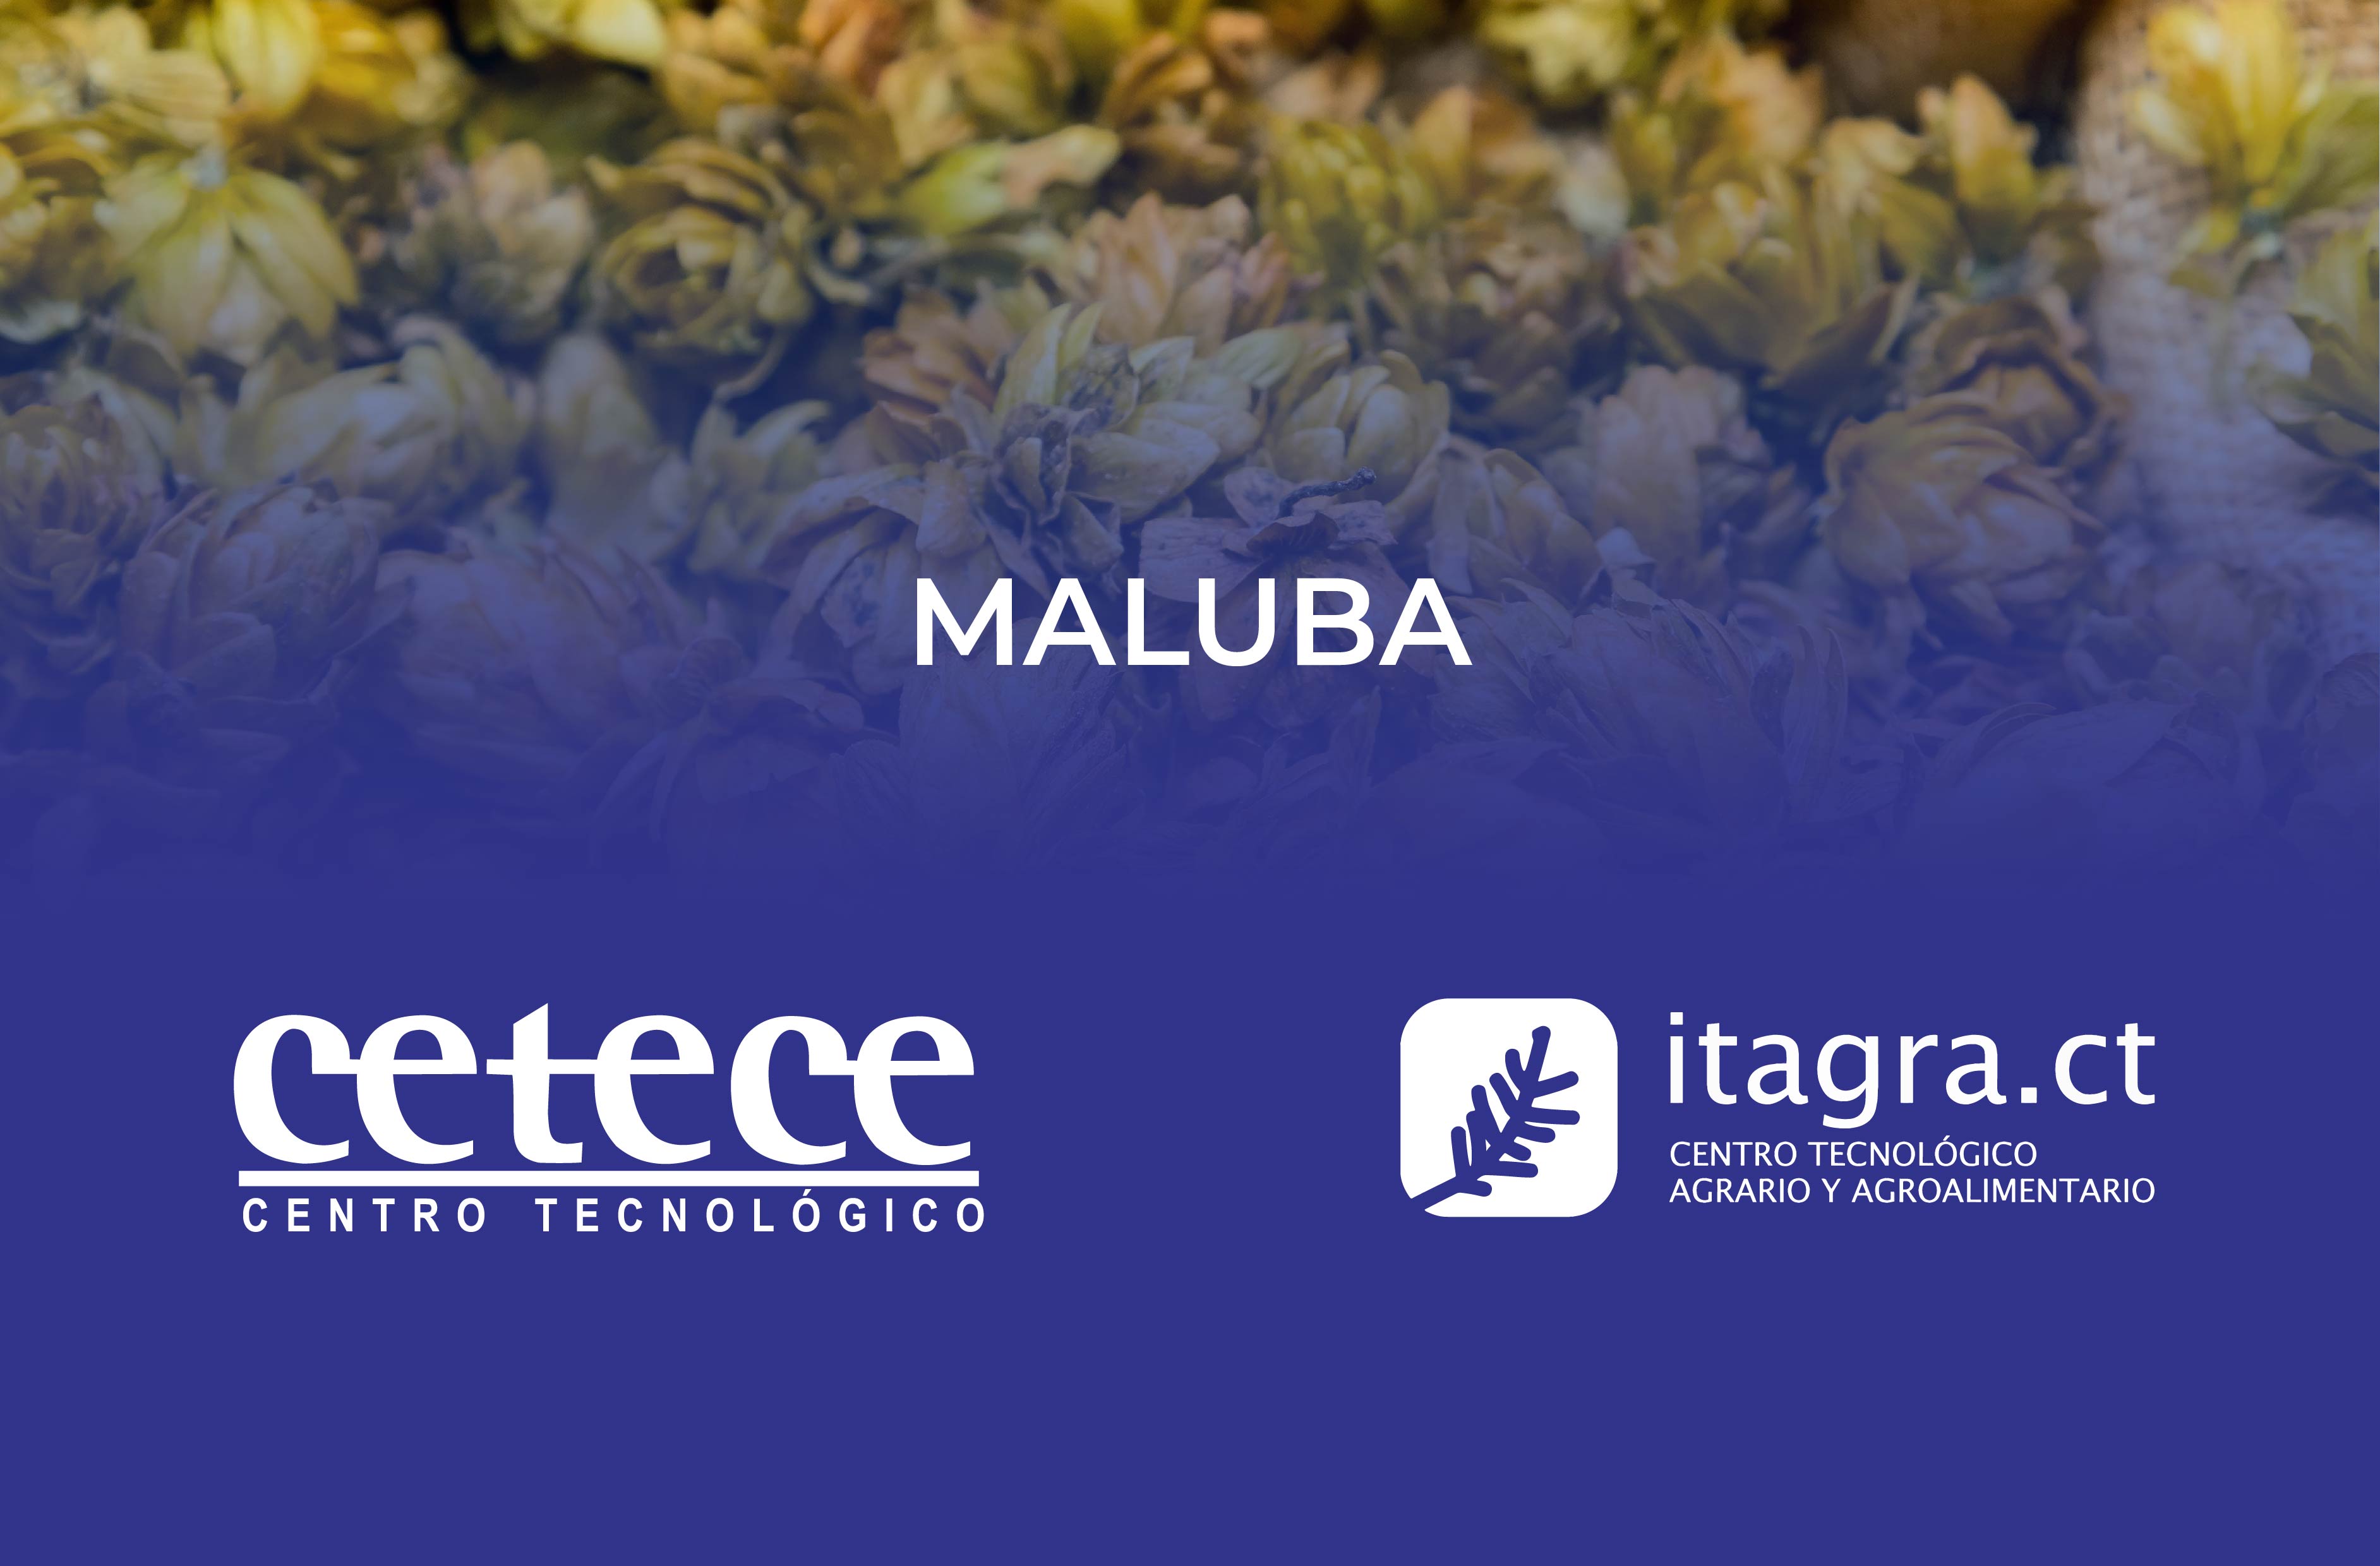 El Proyecto MALUBA destaca por innovar en la industria cervecera y la panificación mediante enfoques circulares. Gracias a la colaboración entre los centros tecnológicos CETECE e ITAGRA, y empresas locales promete transformar subproductos en productos de valor, marcando un camino hacia la sostenibilidad y la innovación.